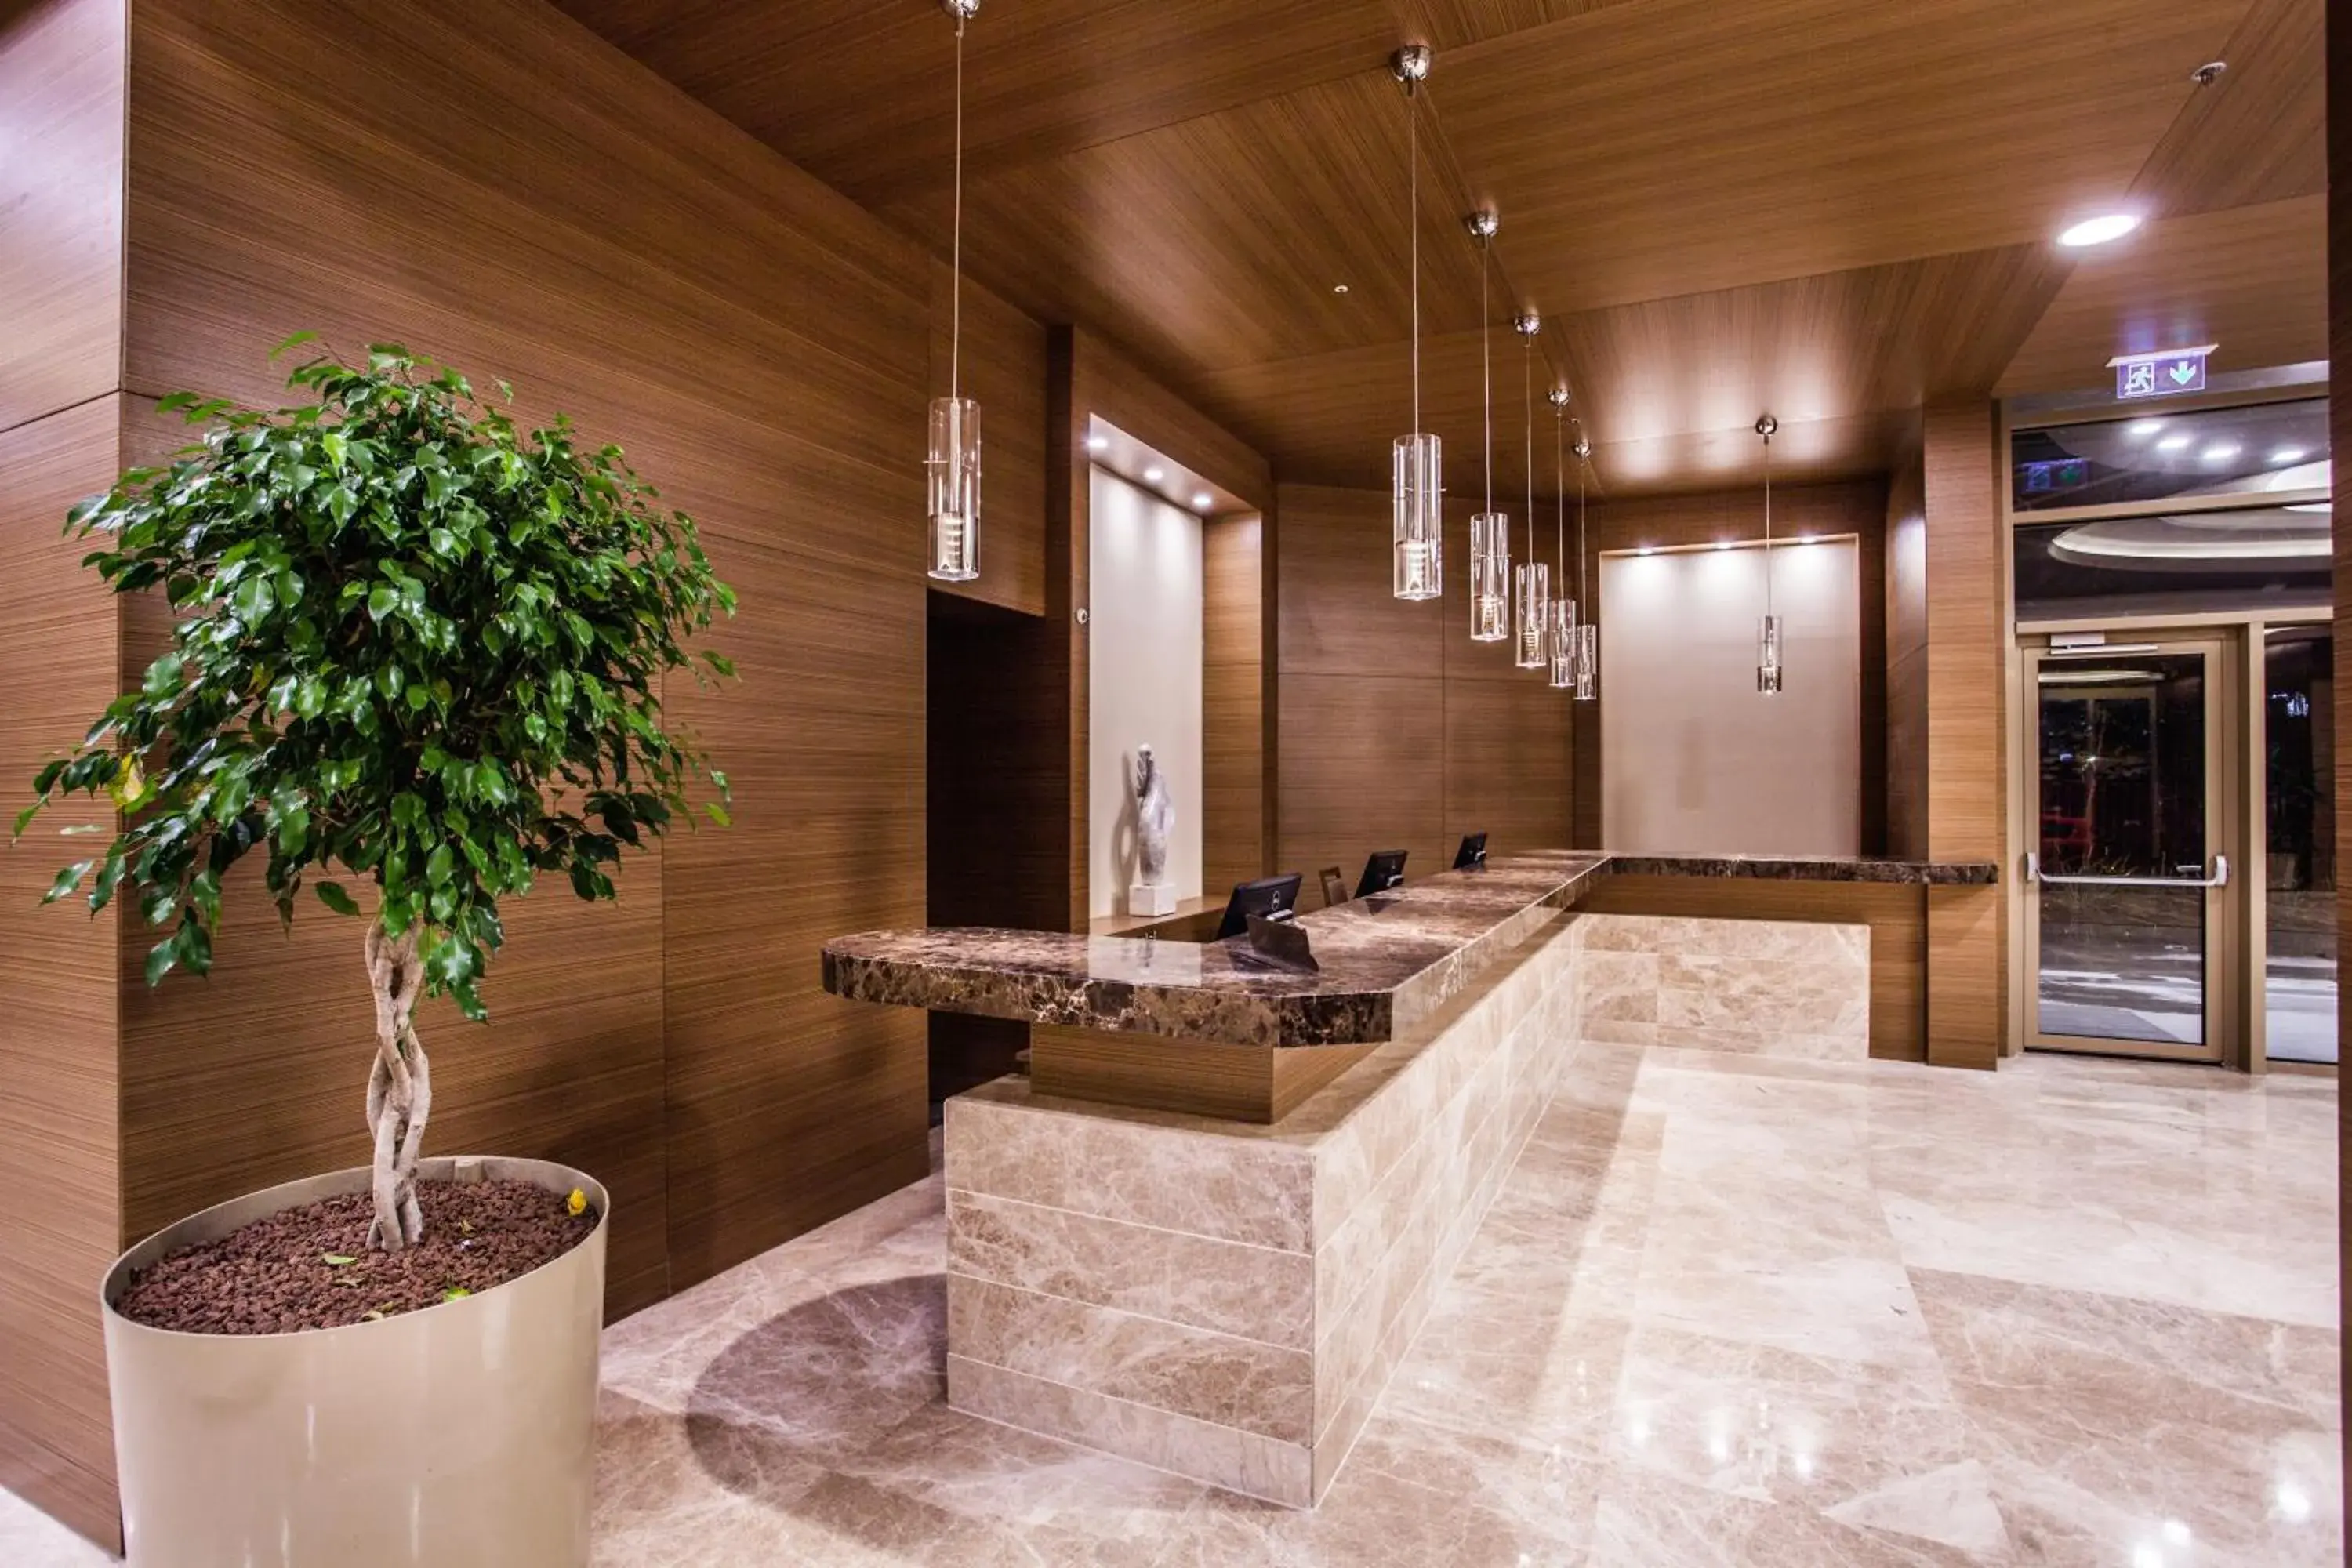 Lobby or reception, Bathroom in Gorrion Hotel Istanbul